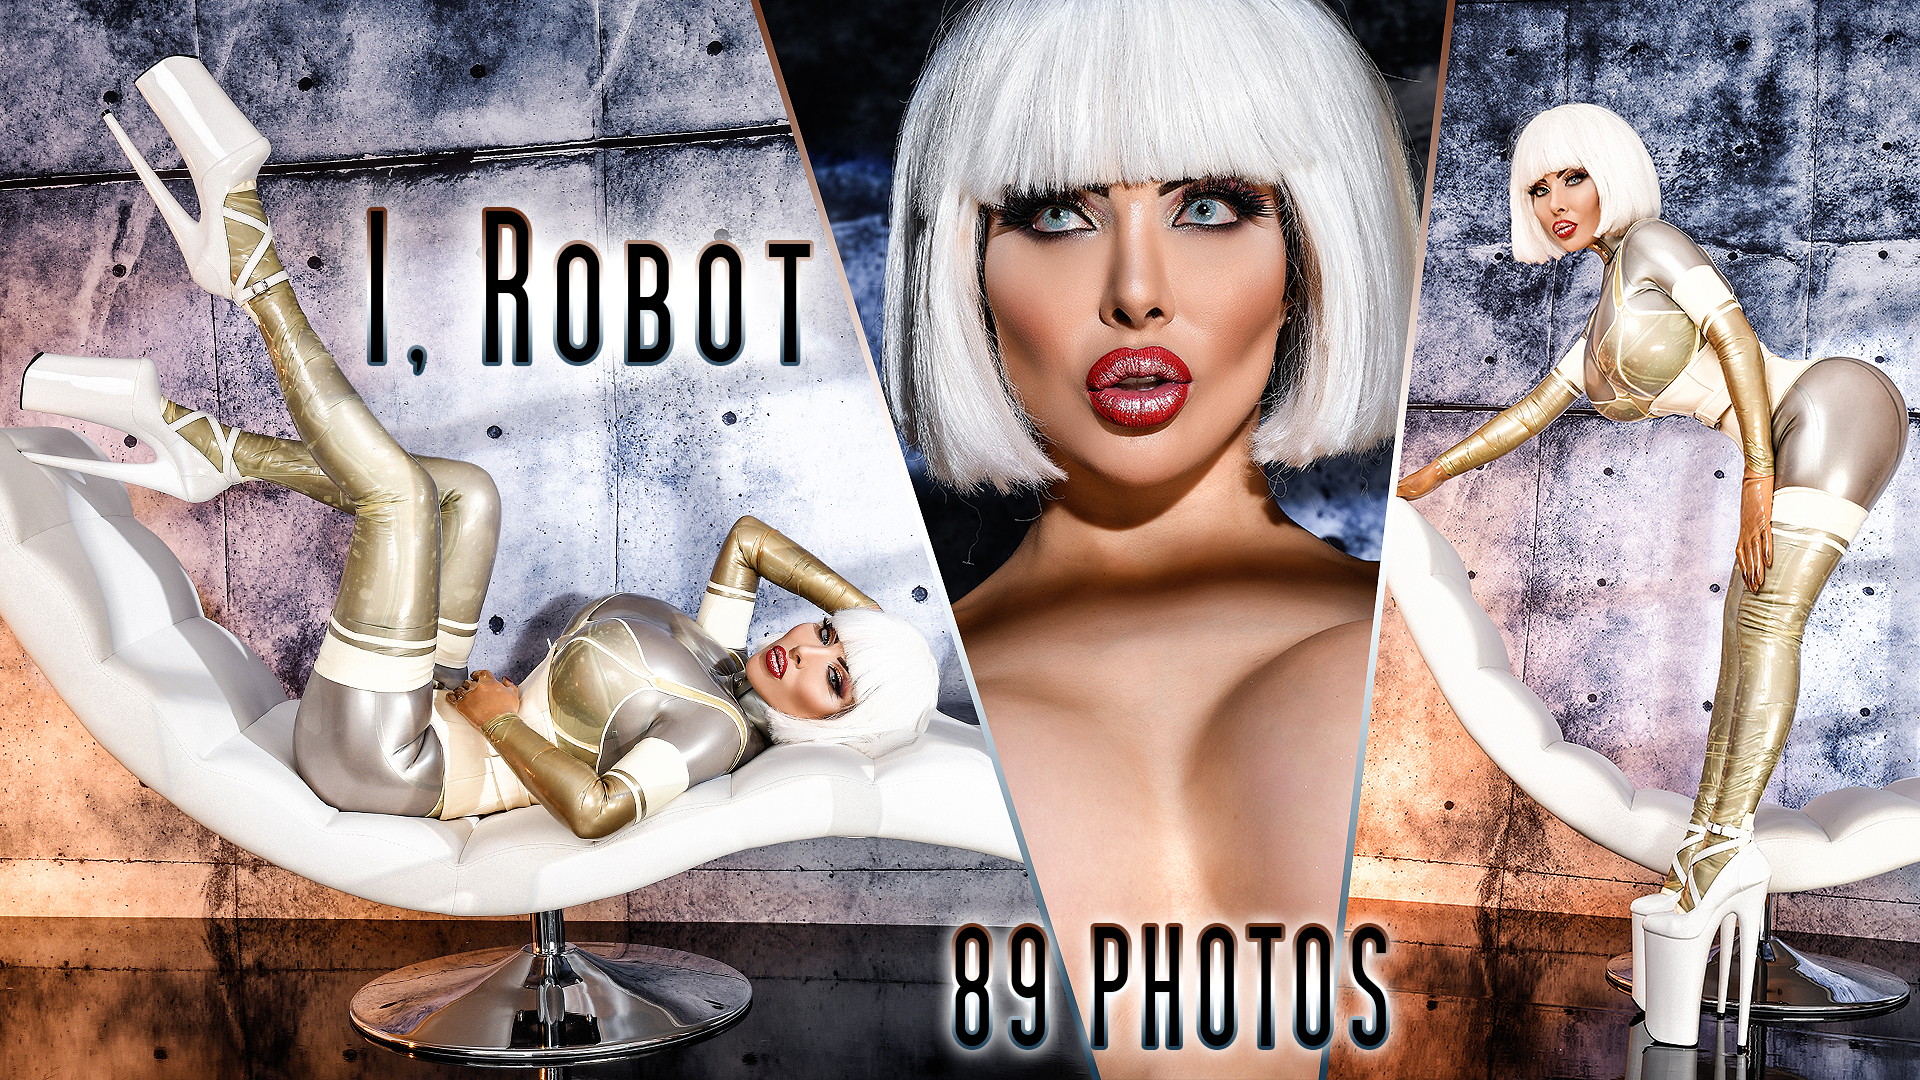 025 - I, Robot Cover 2.jpg